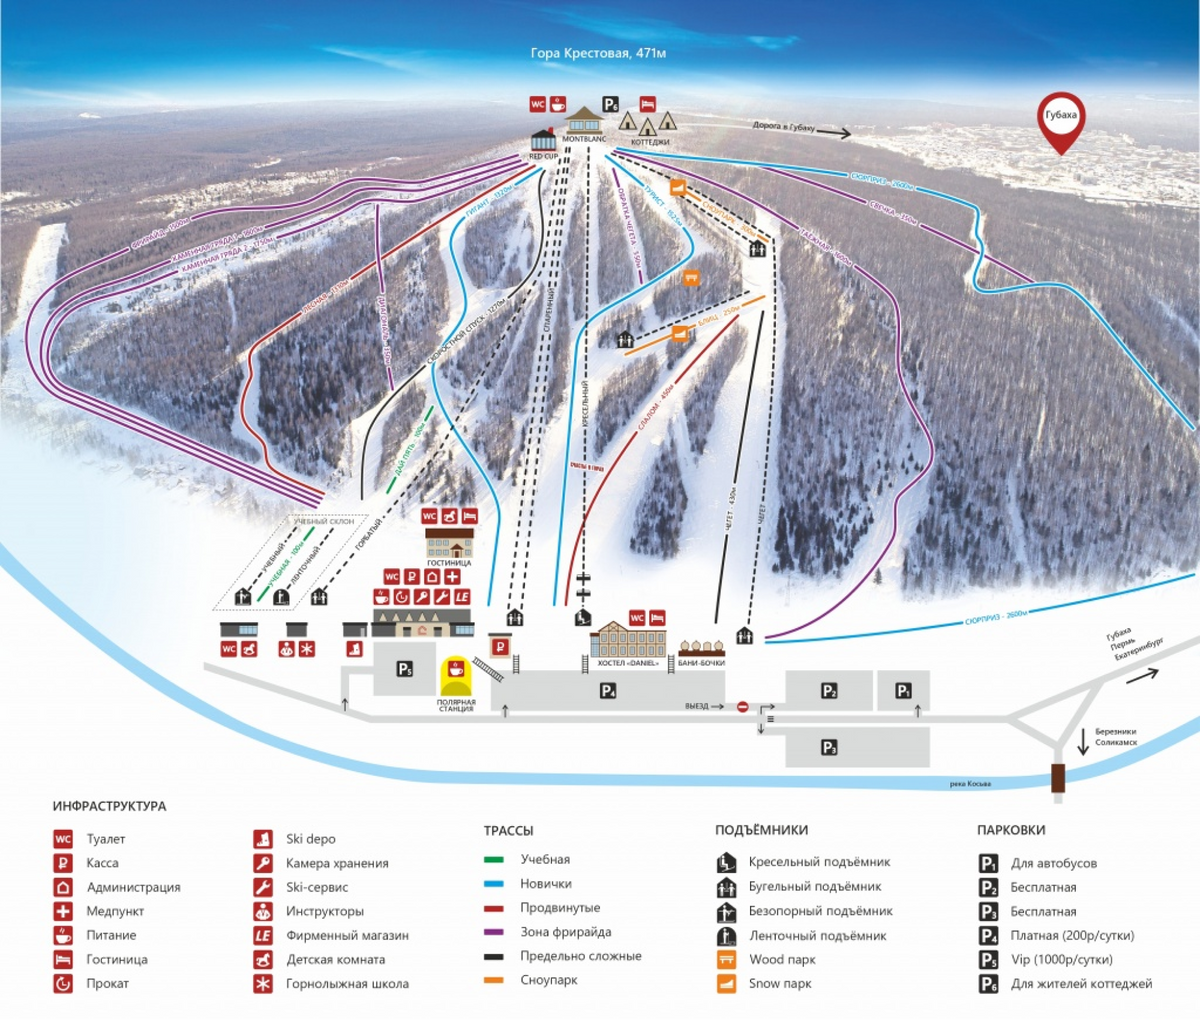 Общая длина трасс «Губахи» — 18 км, перепад высот — до 310 метров. Источник: gubahasport59.ru